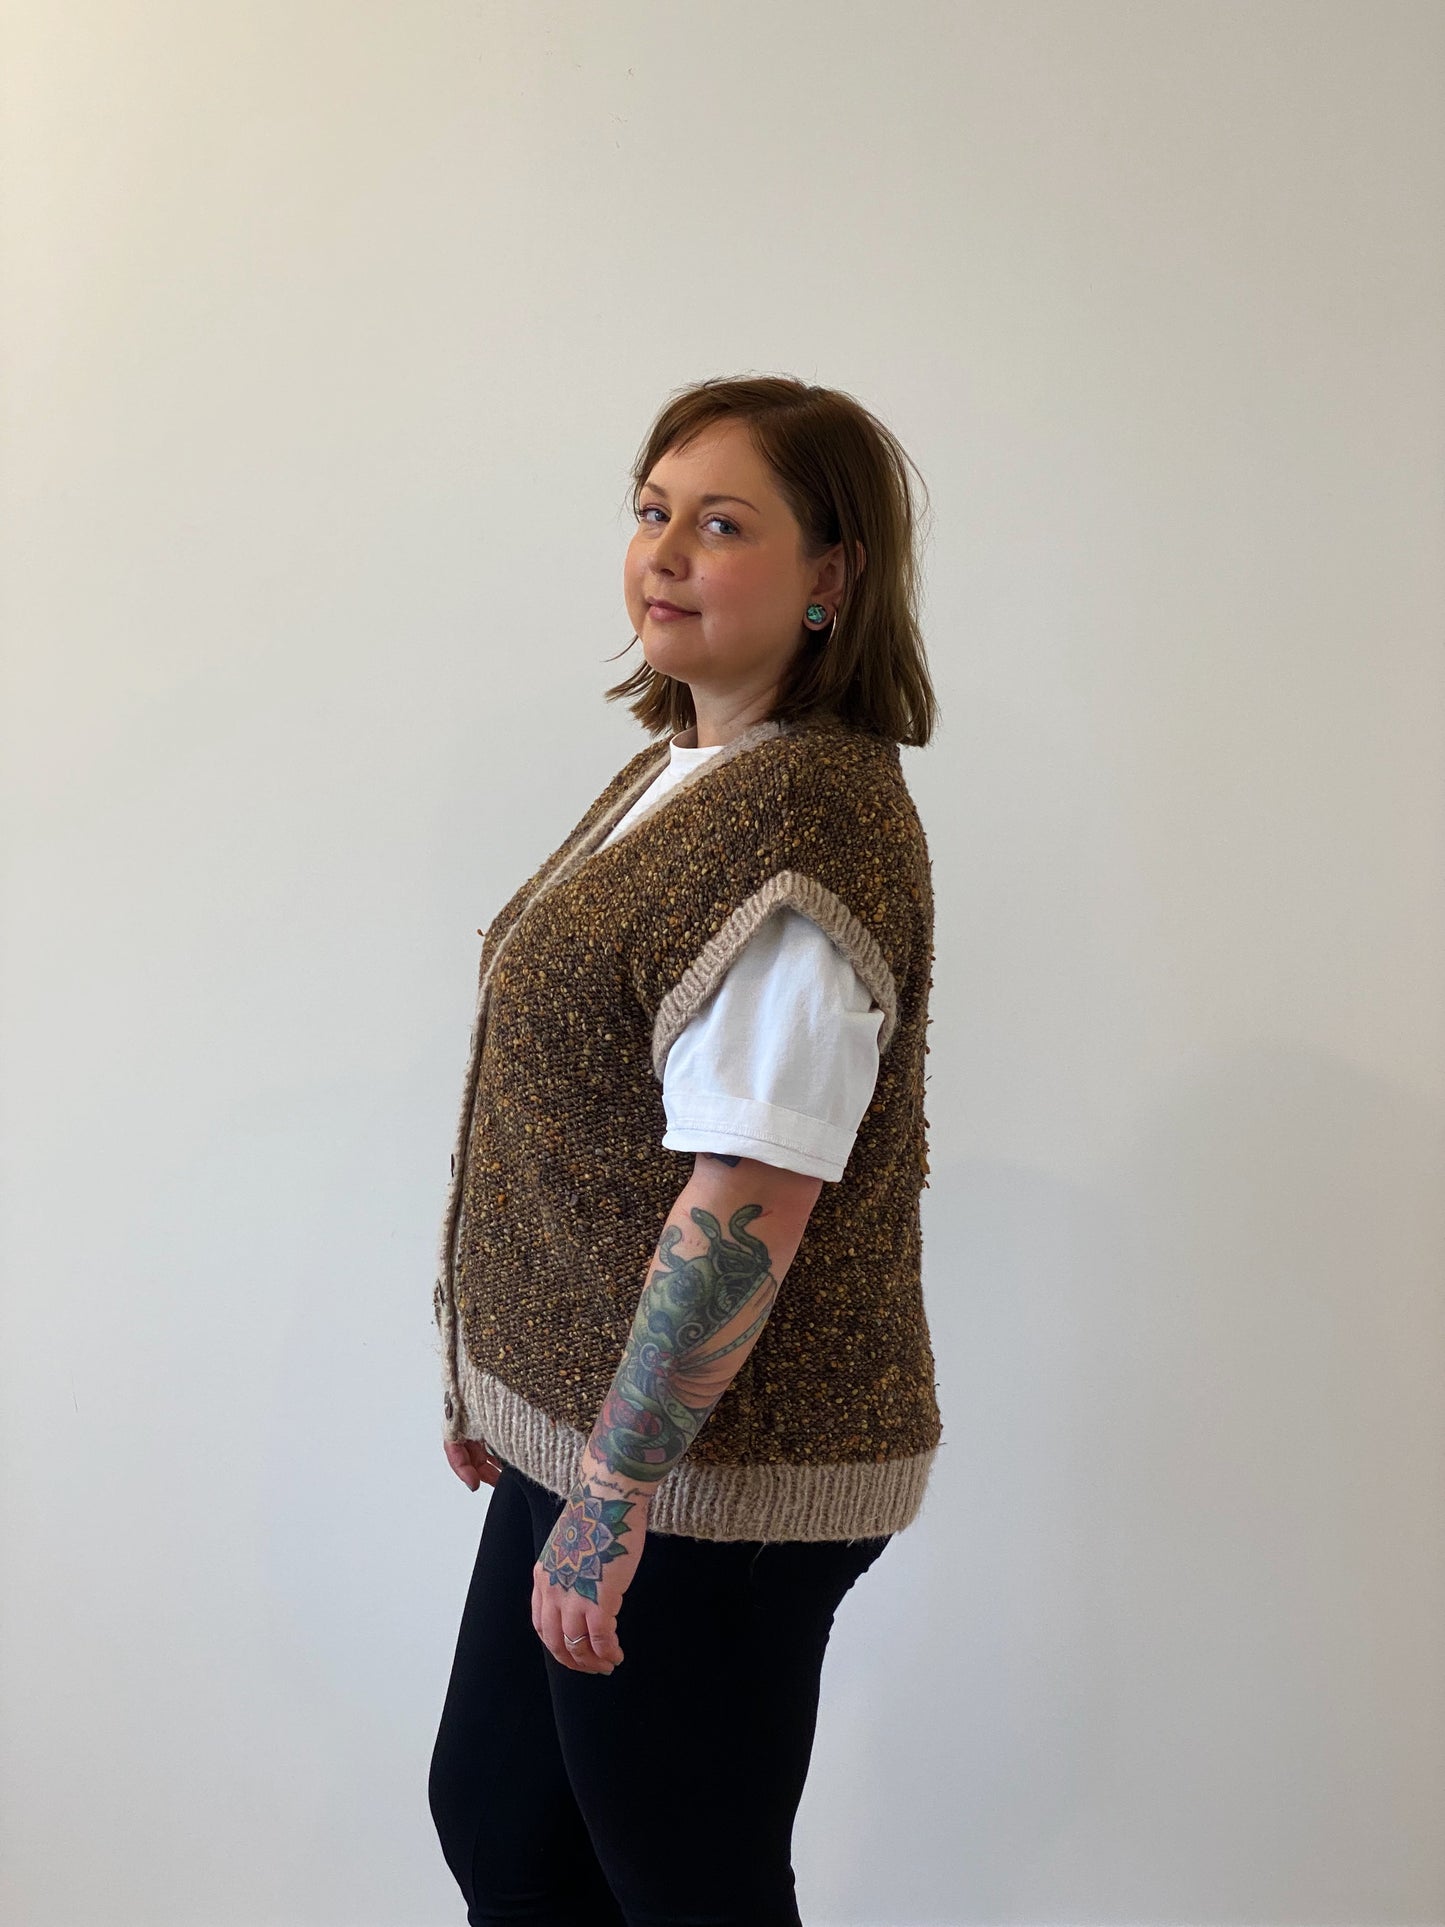 Vintage knit vest with buttons (L)